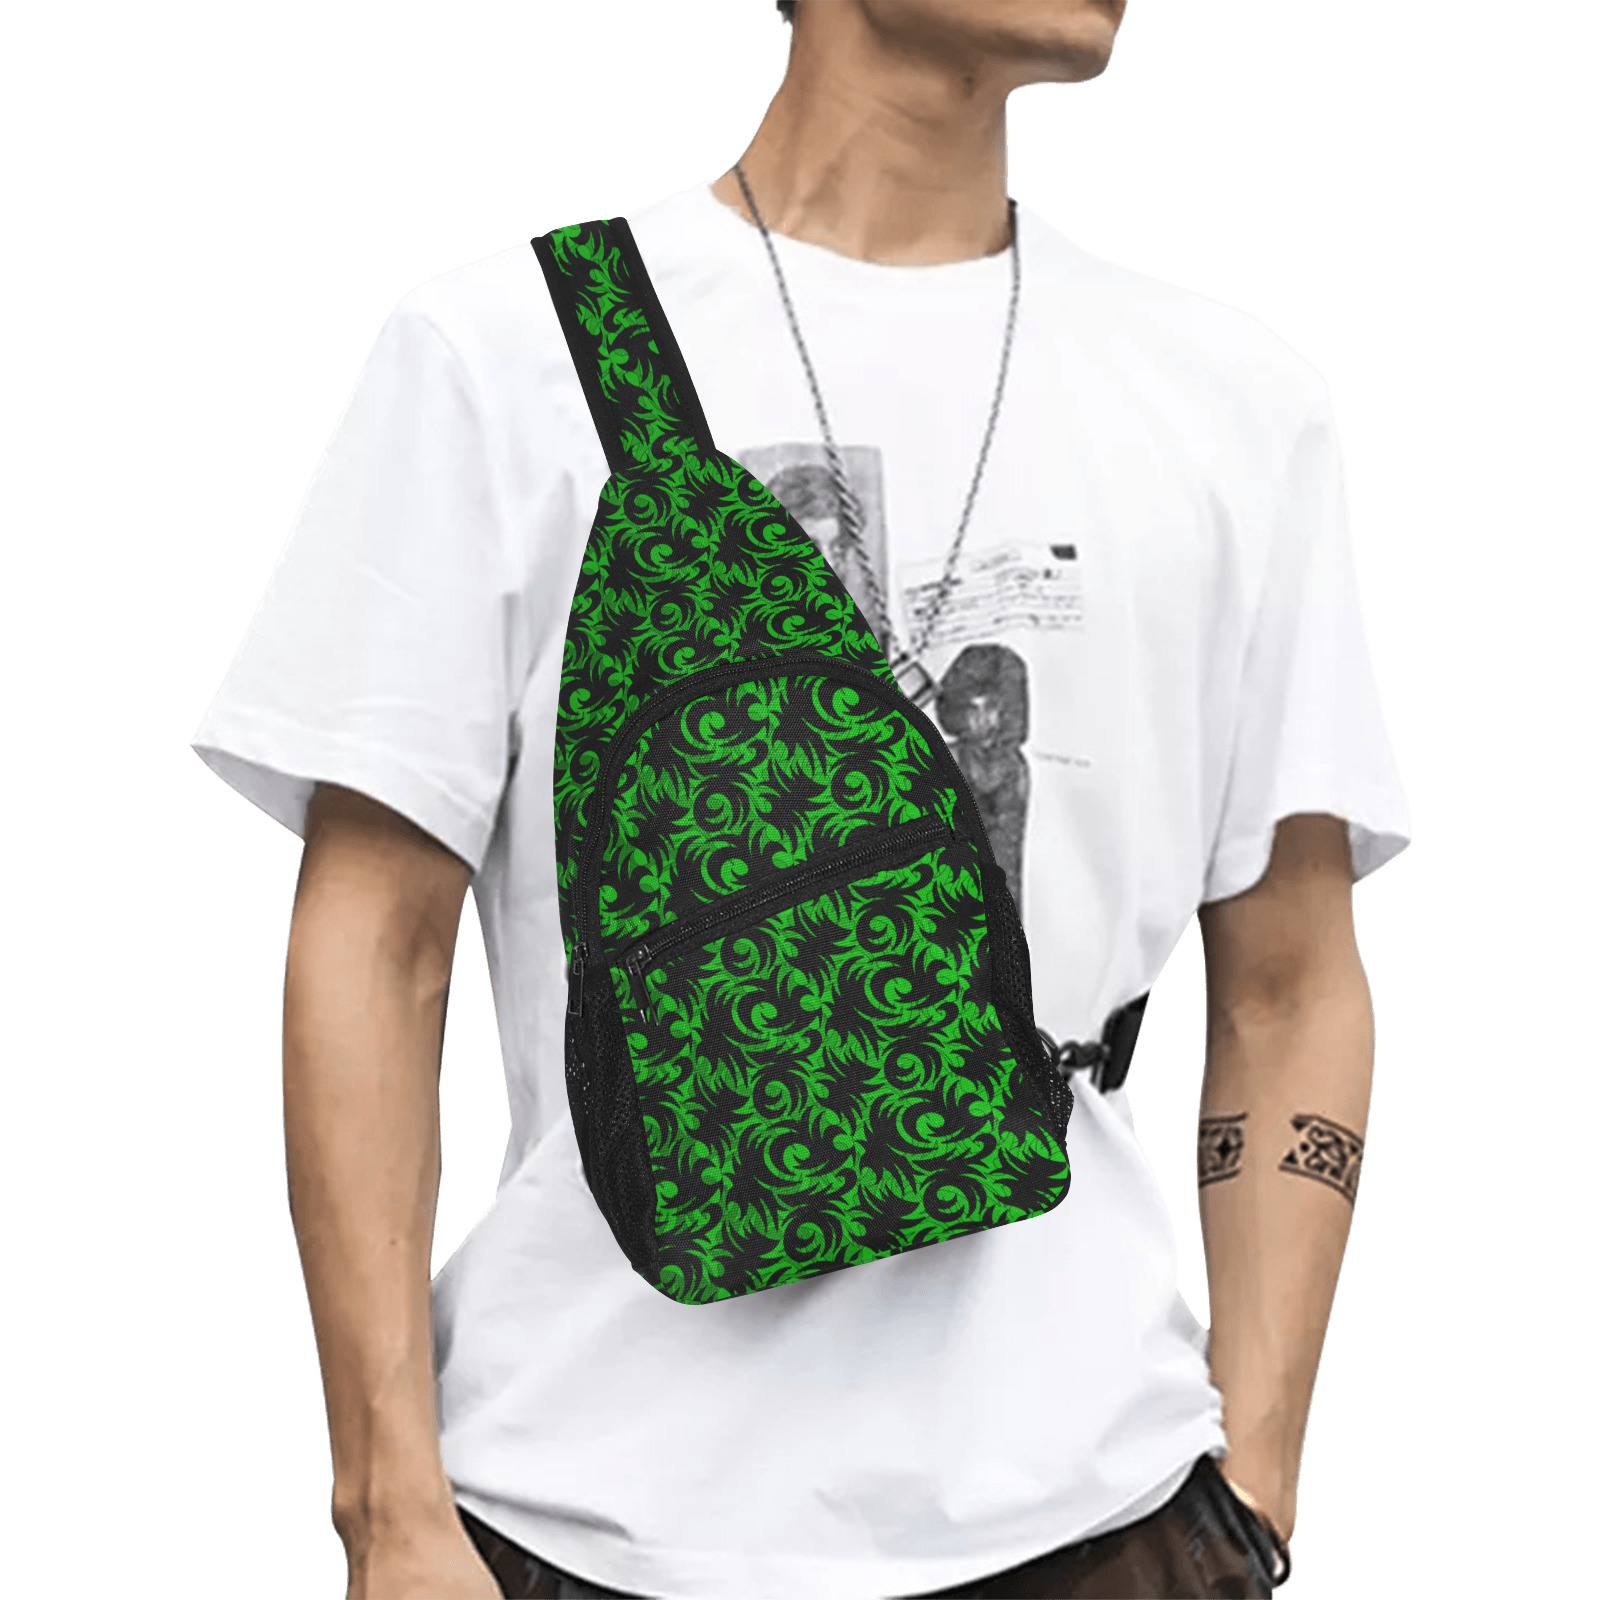 green swirl All Over Print Chest Bag (Model 1719)